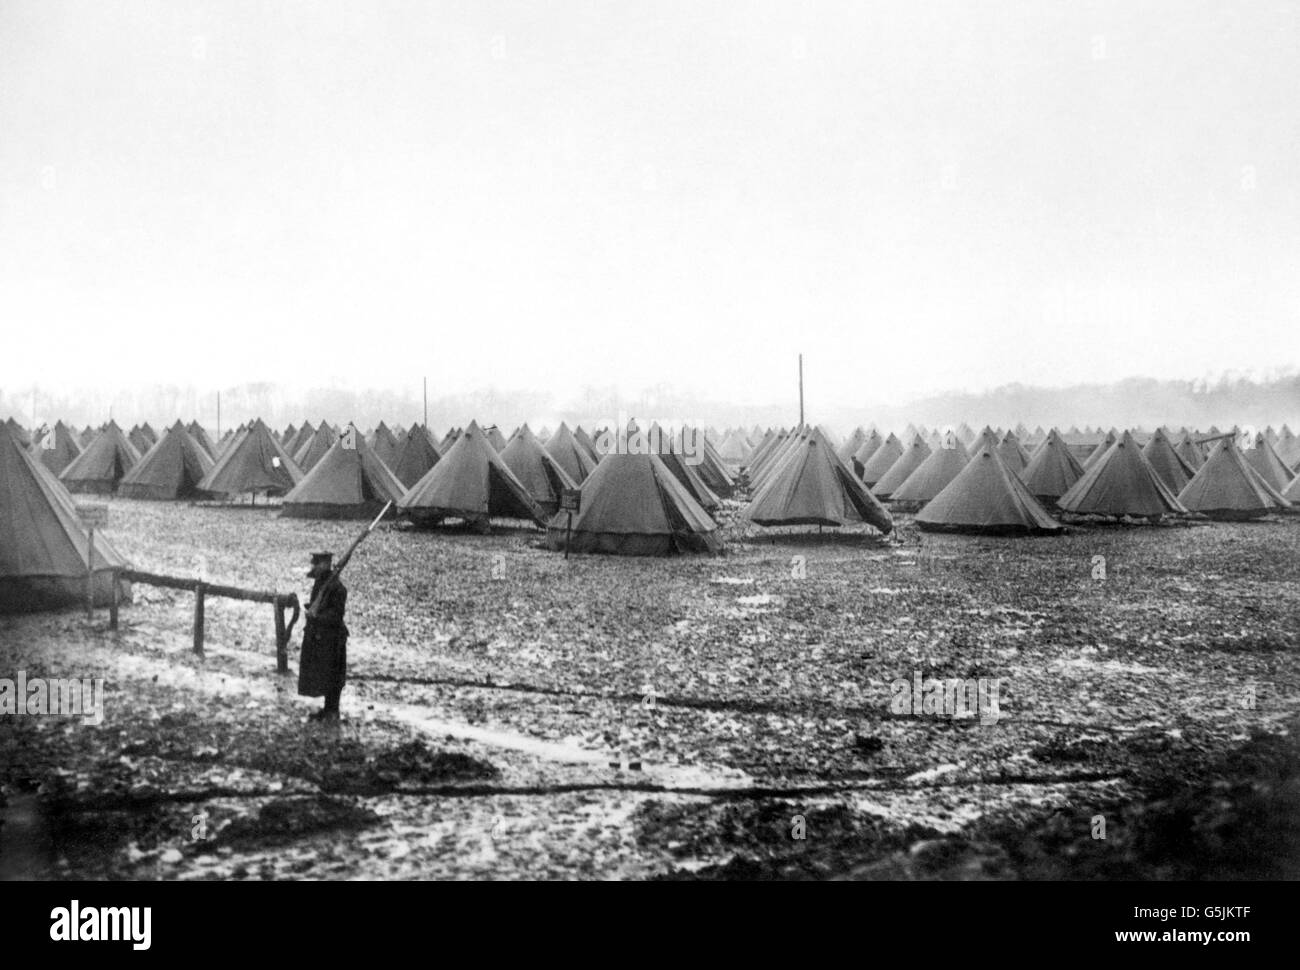 Erster Weltkrieg - Britisches Lager - Frankreich. Ein britisches Lager in Nordfrankreich. Stockfoto